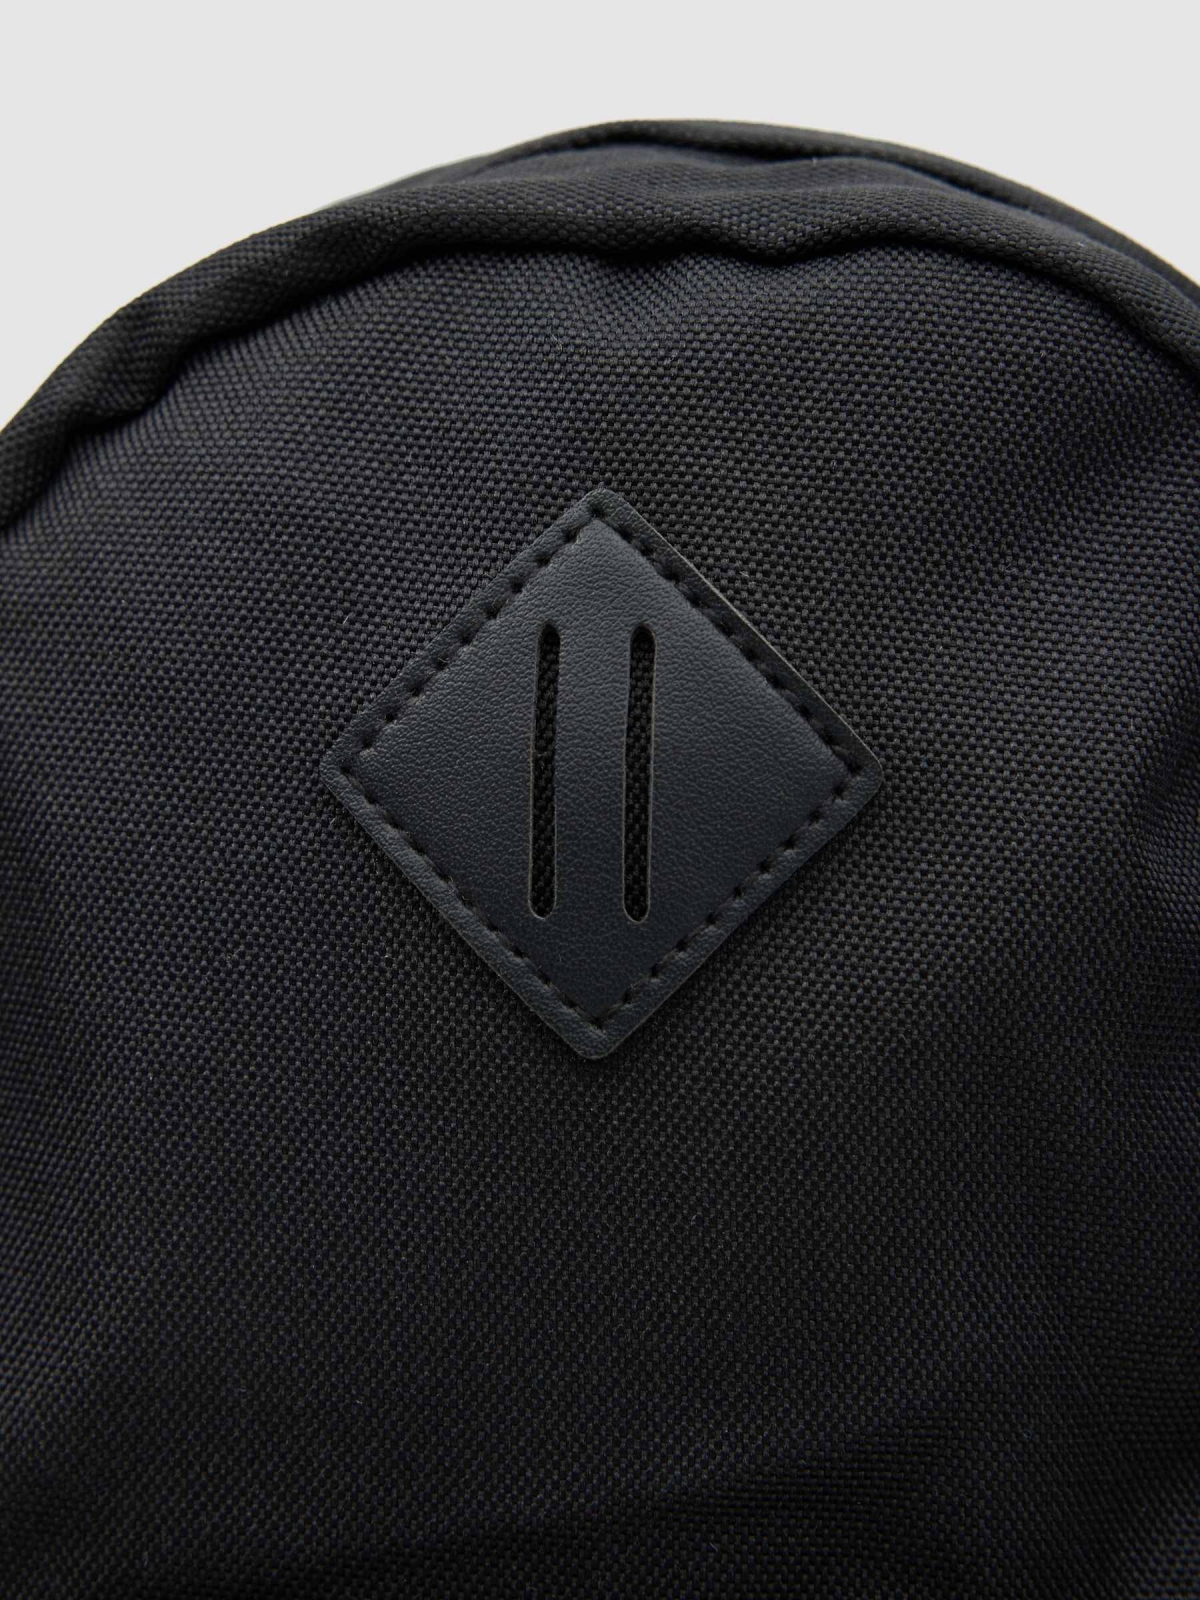 Crossed backpack detail view